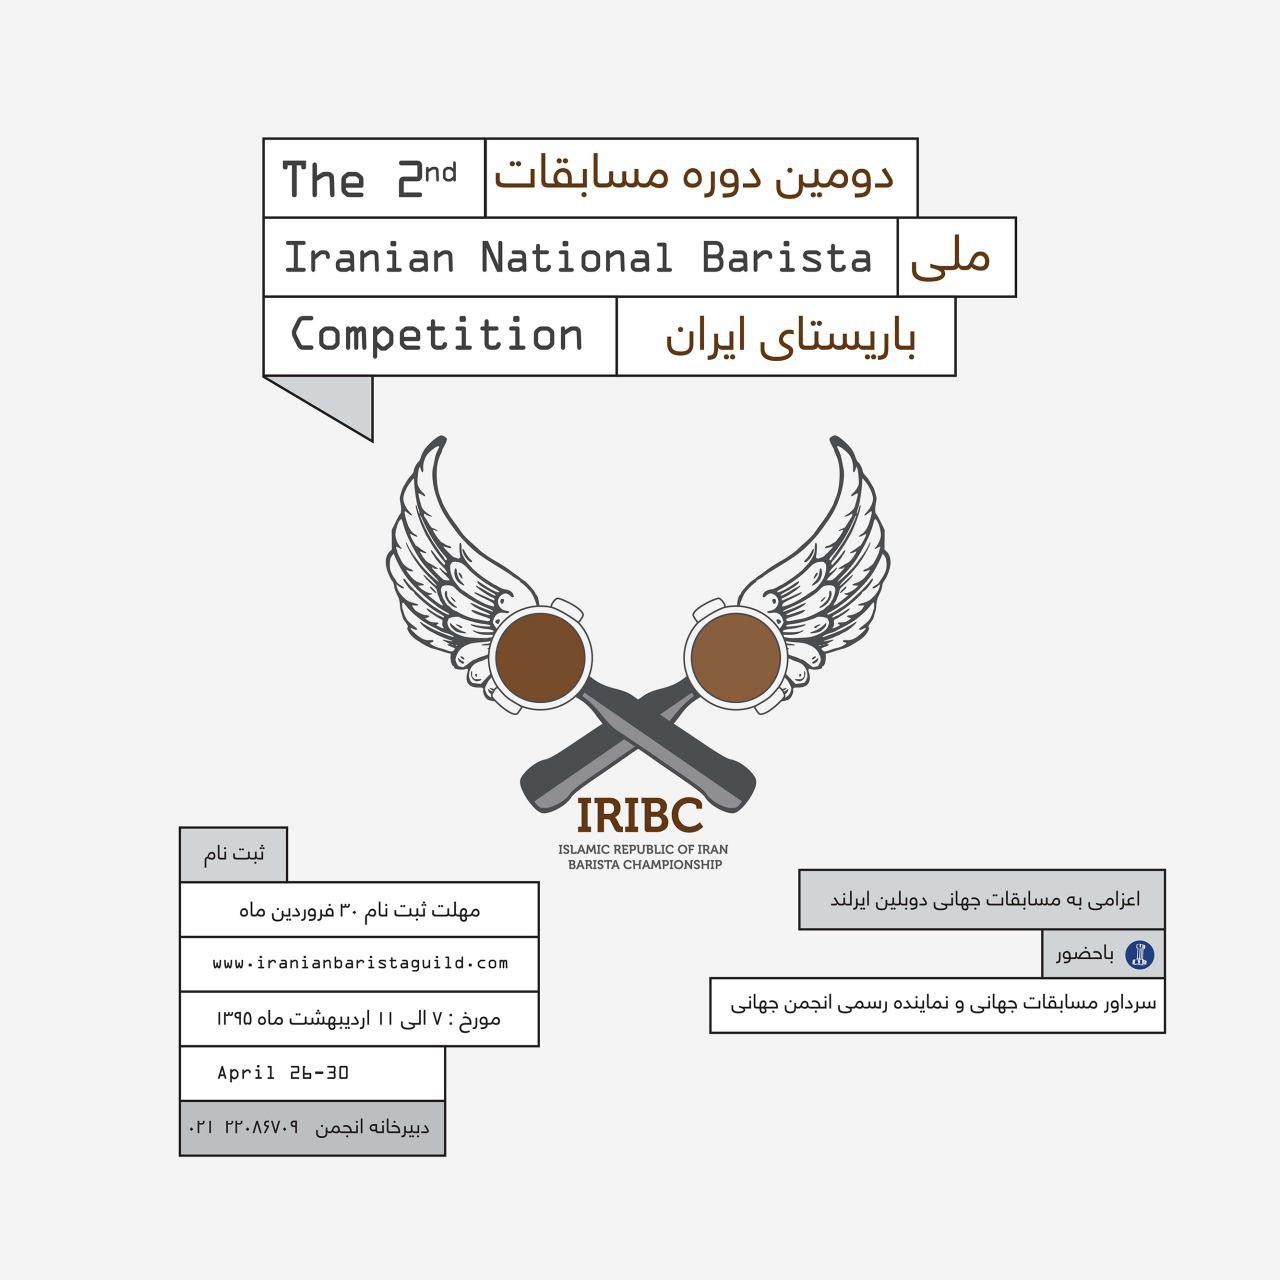 دوره مسابقات ملی باریستا IRIBC 2016